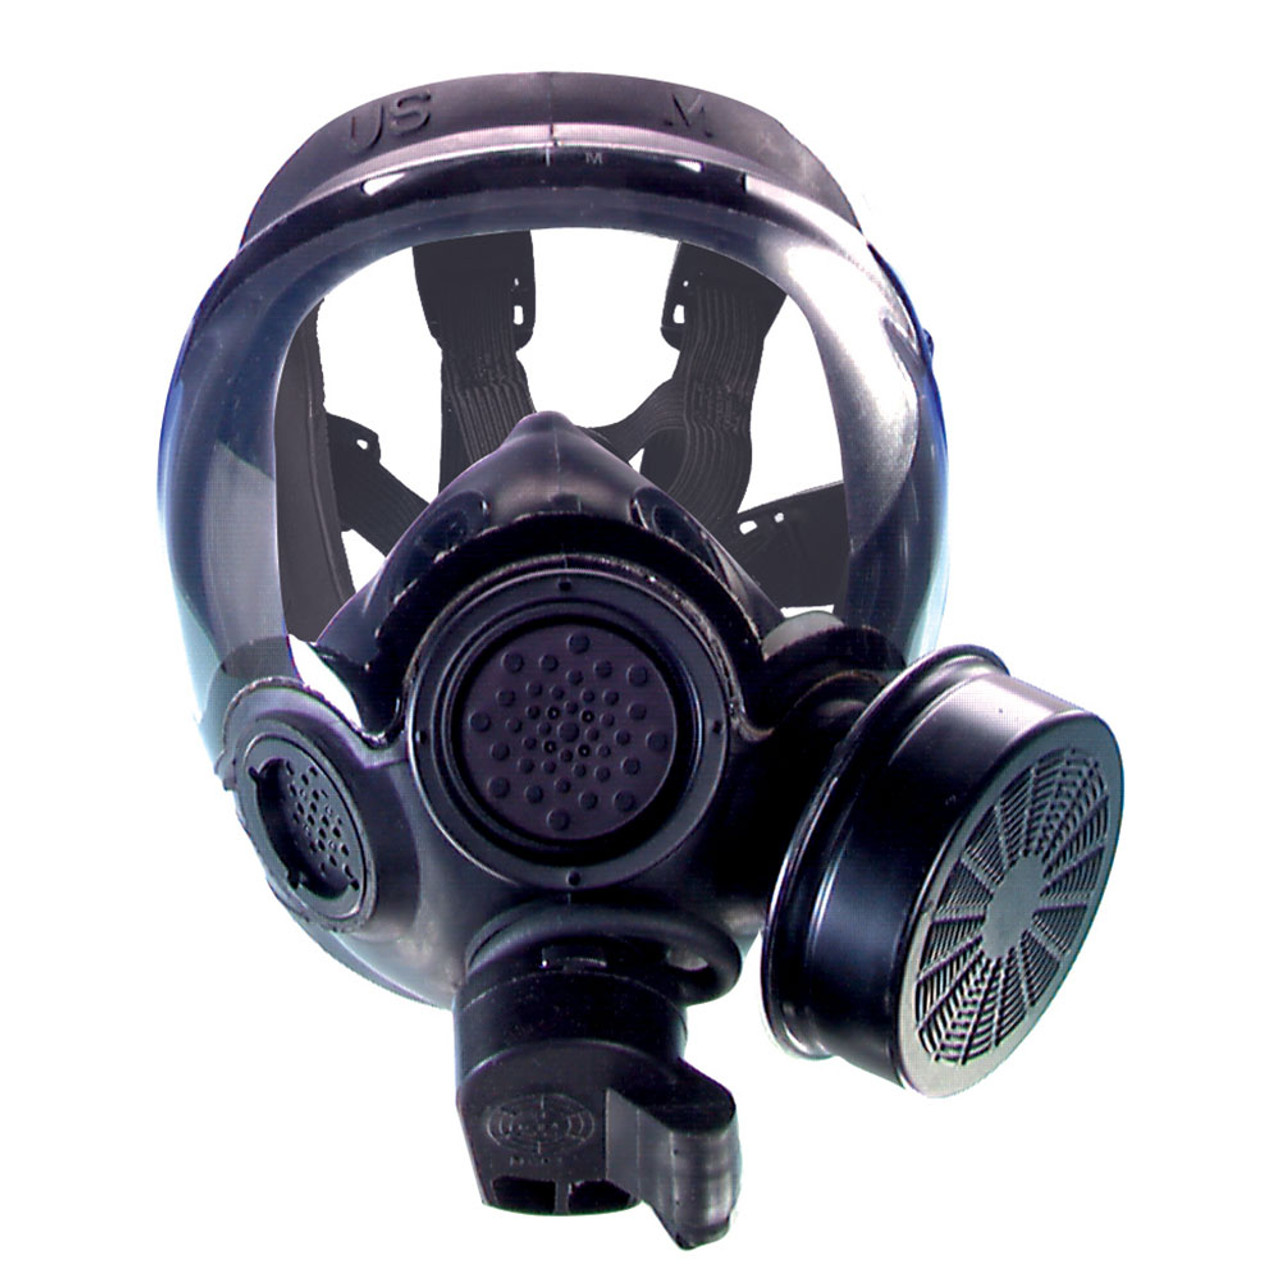 msa black gas mask carrier